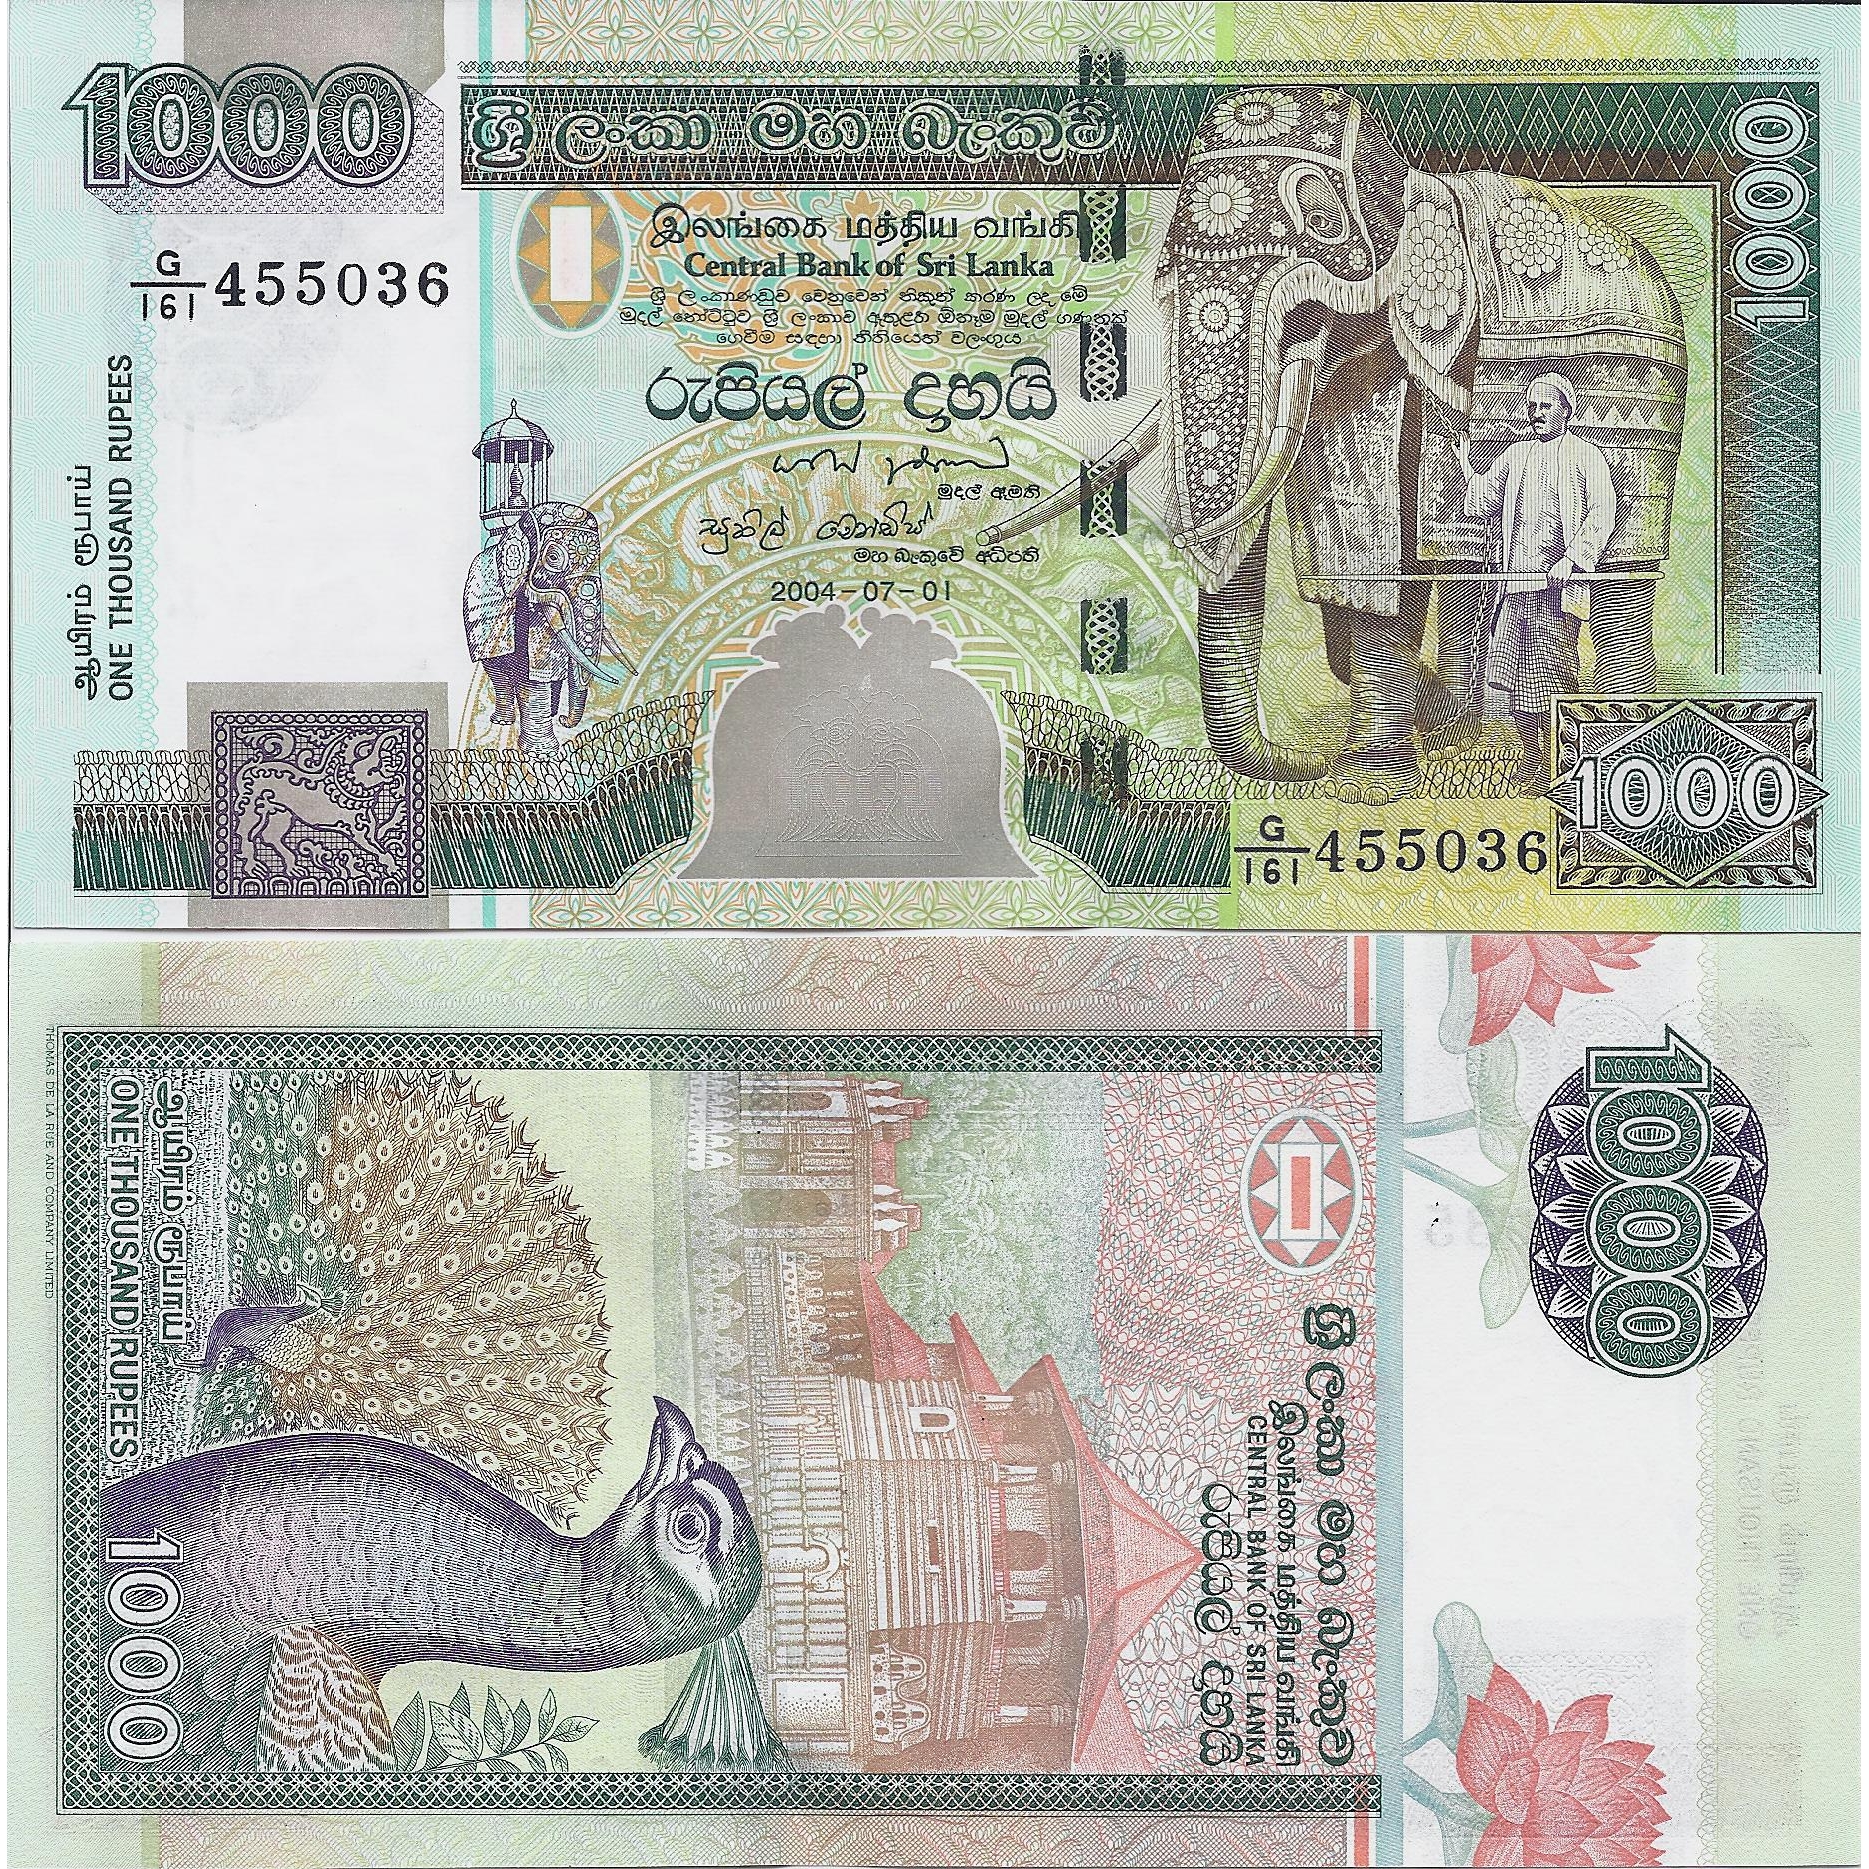 Шри ланка деньги курс. Рупии Шри Ланка купюры. Банкнота 1000 рупий Шри Ланка. Банкнота 100 рупий Шри Ланка. Шри Ланкийская рупия банкноты.